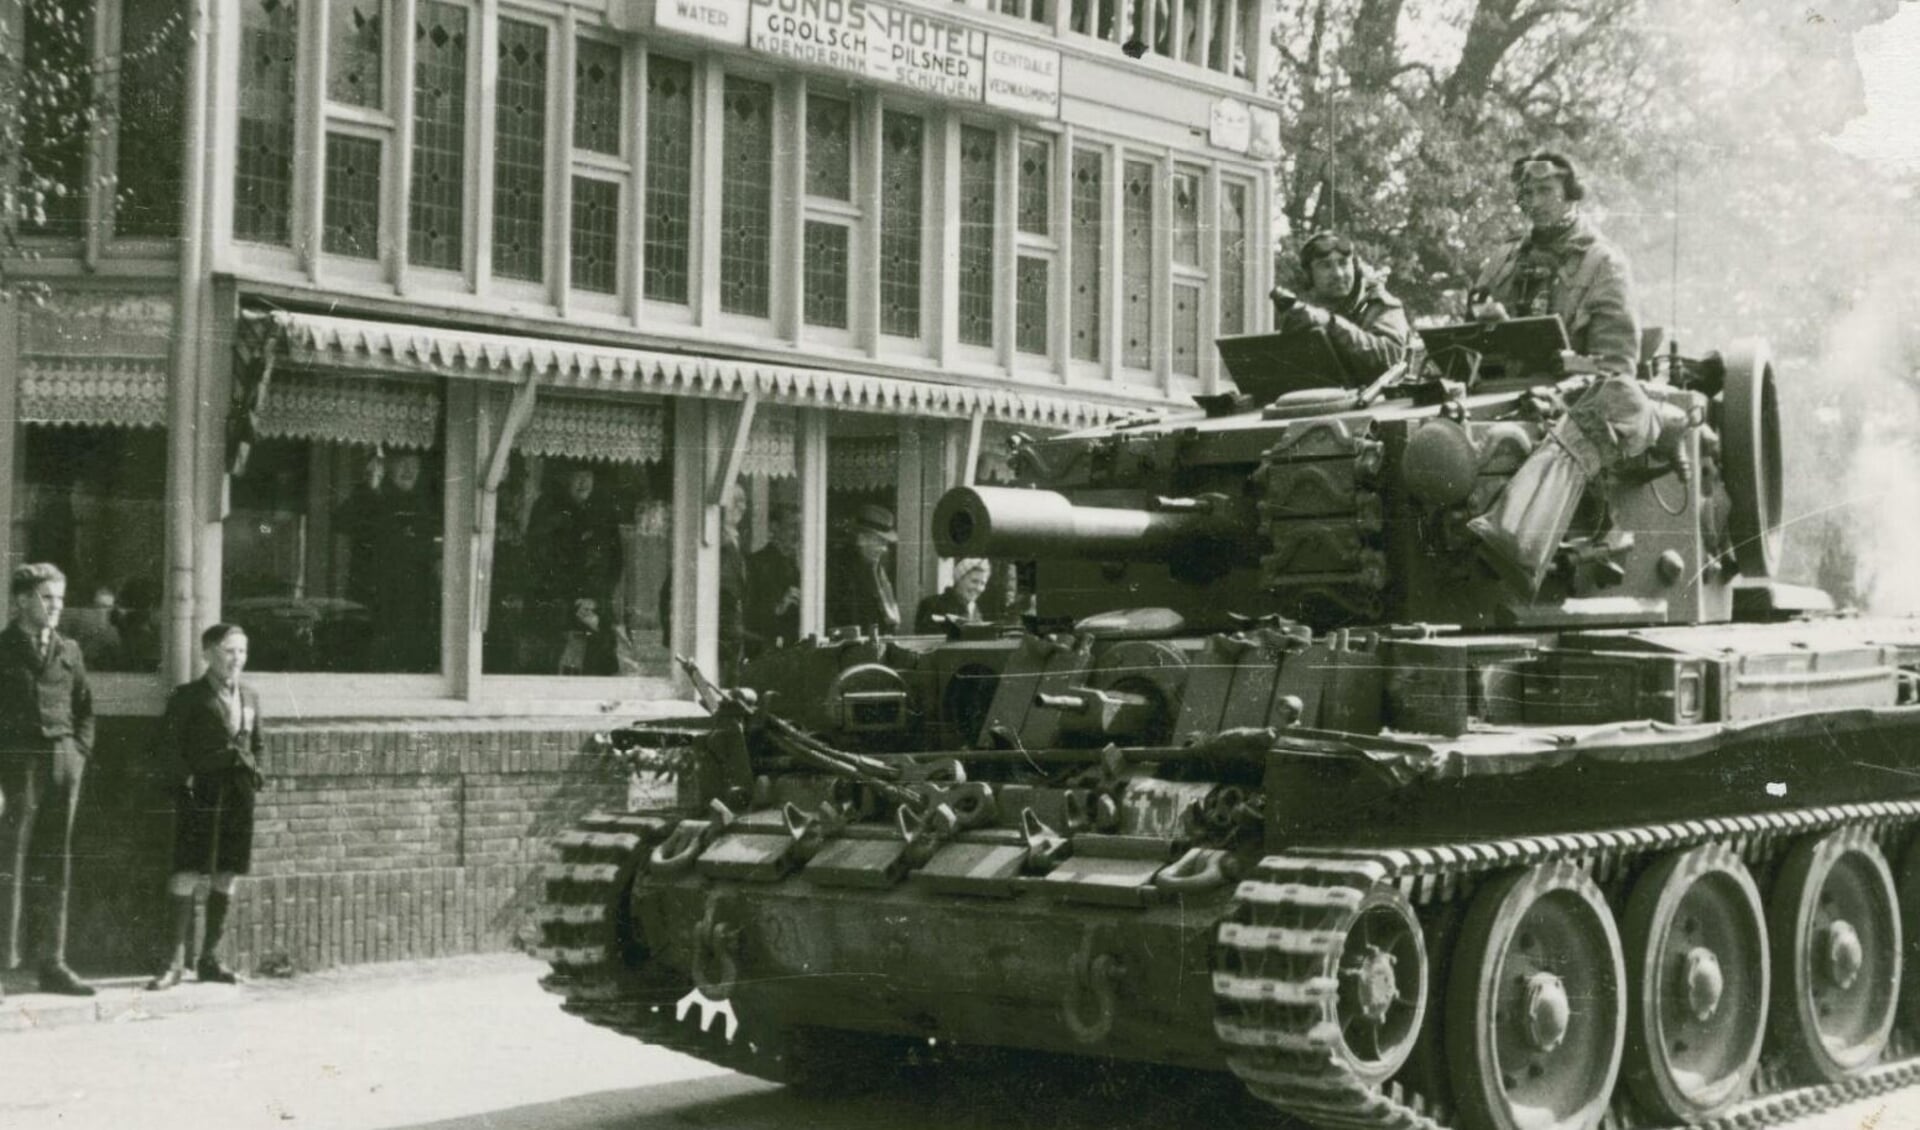 Canadese bevrijders in hun tank op het Schild in Rijssen voor hotel Koenderink/Schutjen.